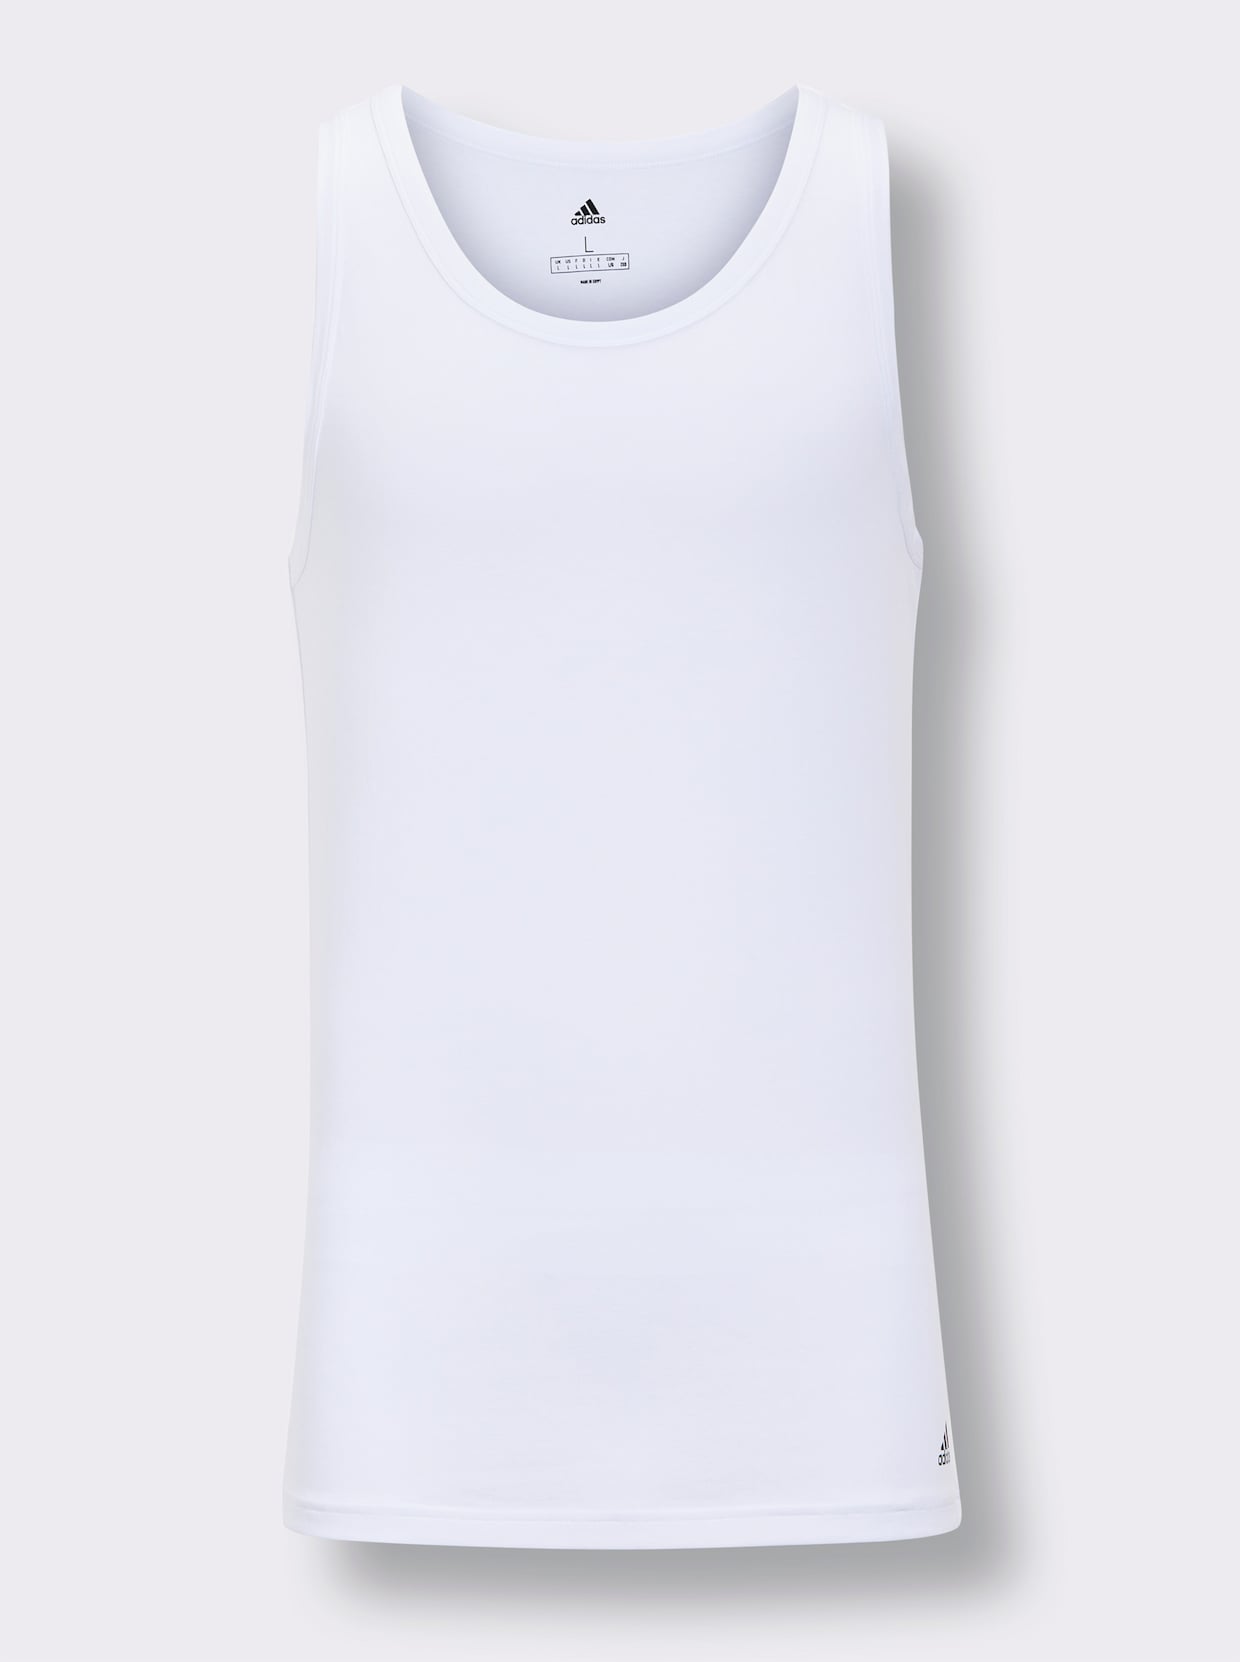 Adidas Unterhemd - weiß